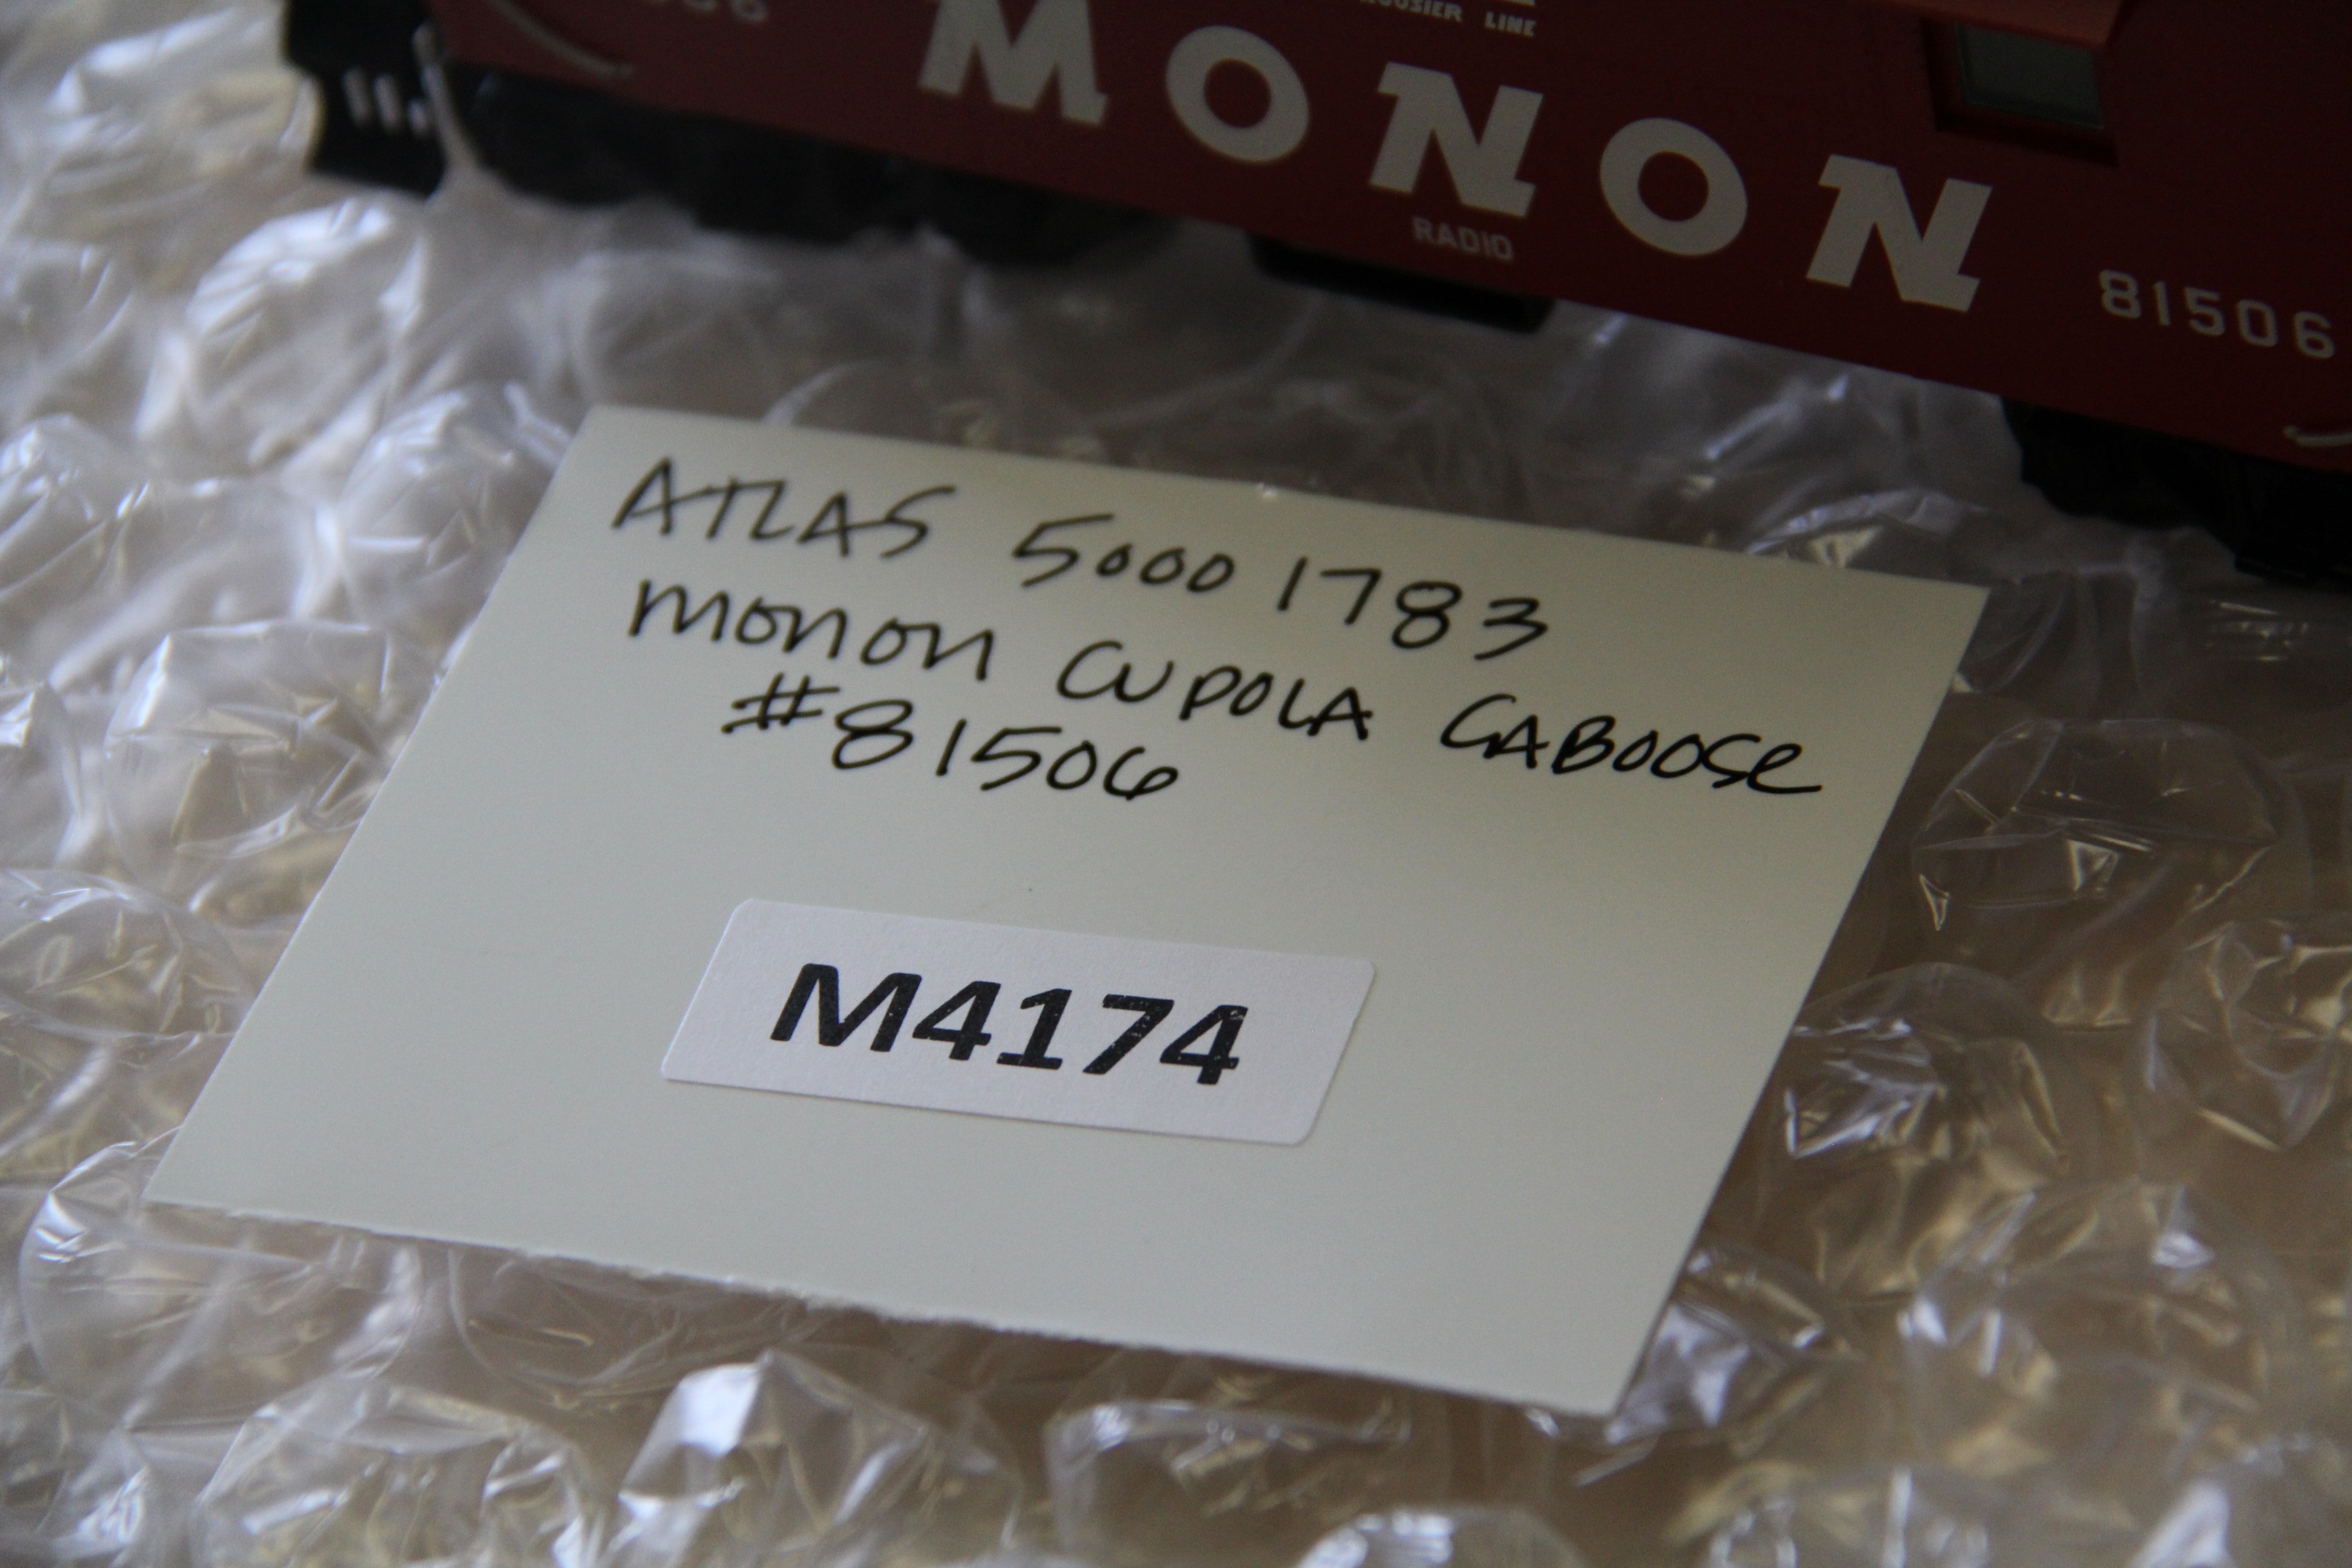 Atlas #50001783 Monon Cupola Caboose-Second hand-M4174